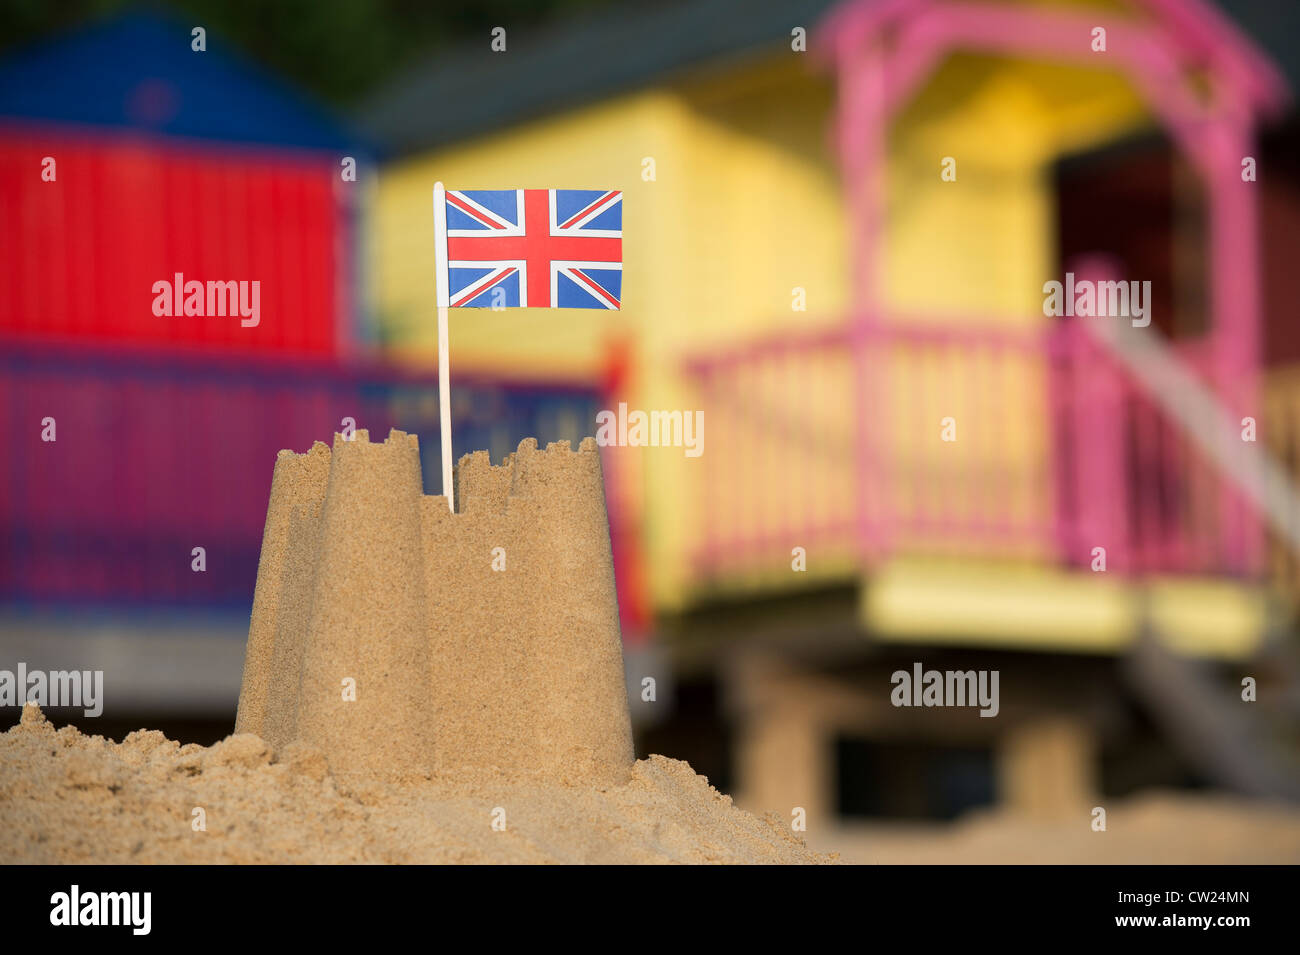 Union Jack flag dans un château de sable en face de cabines colorées. Wells next the sea. Norfolk, Angleterre Banque D'Images